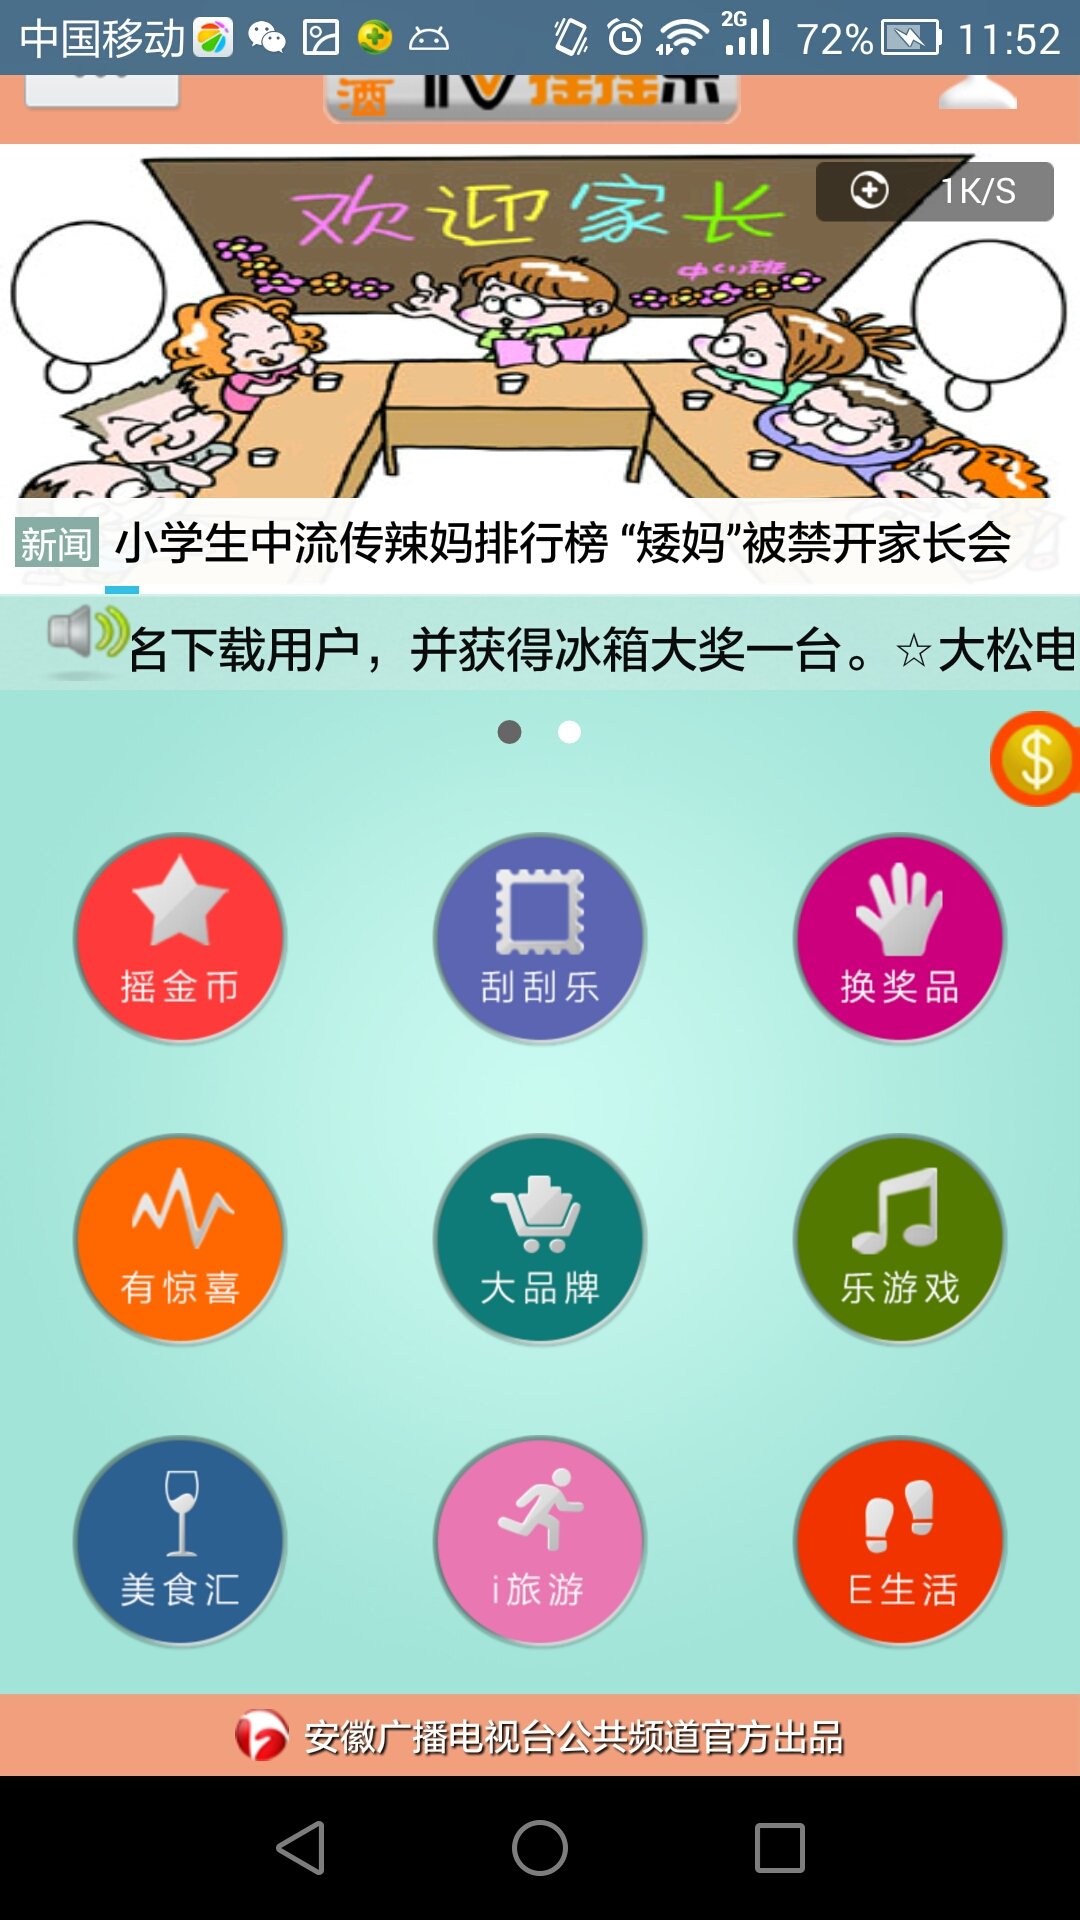 安徽tv摇摇乐iPhone版 v5.0 苹果手机版0